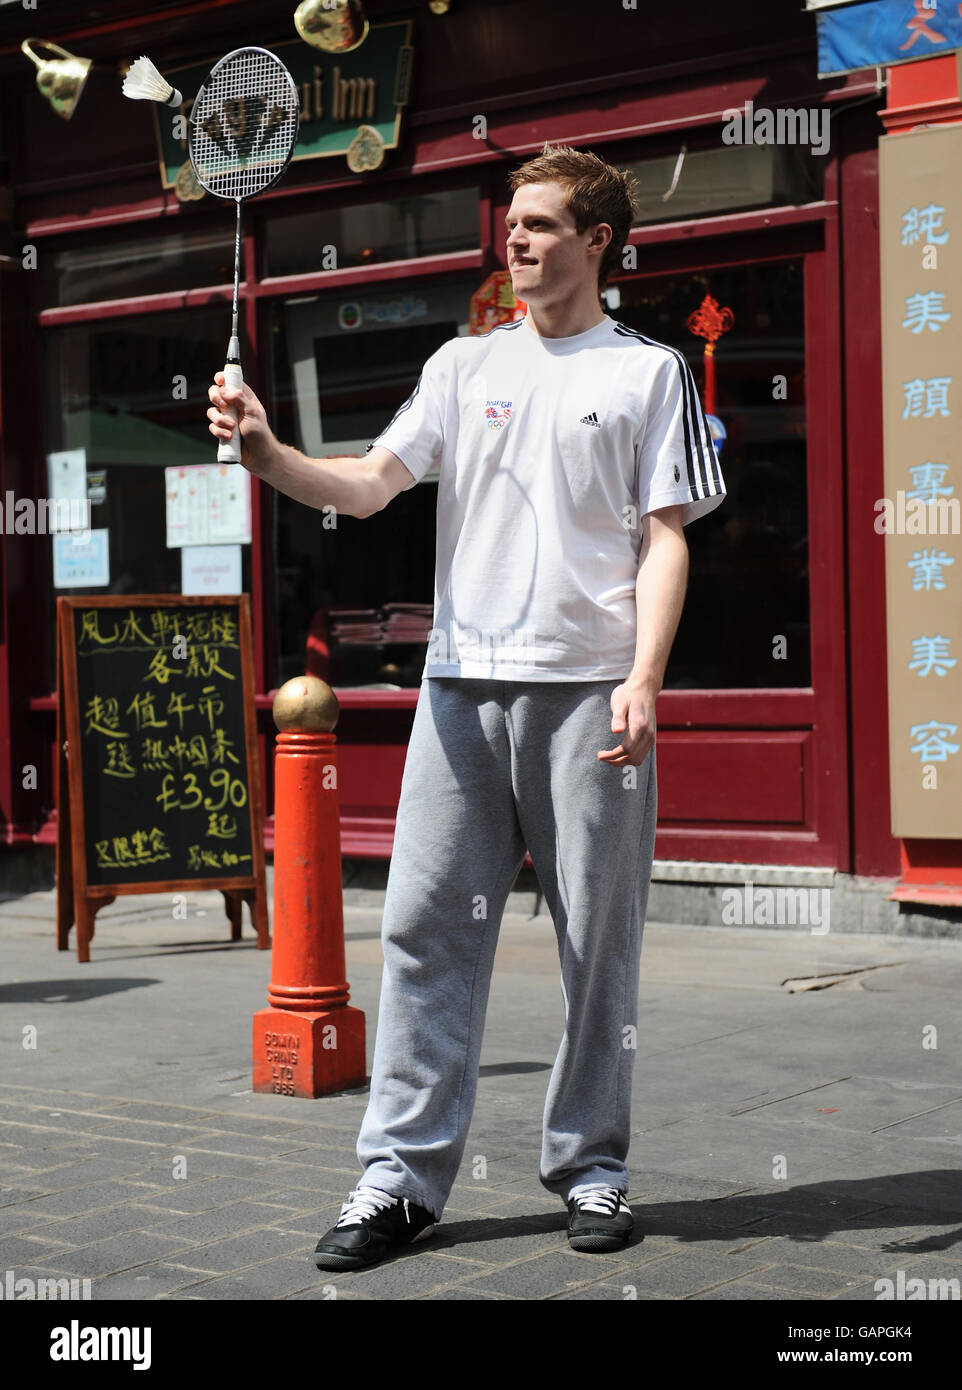 Andrew Smith von Team GB während des Fotoanrufs im Imperial China Restaurant, London. Stockfoto